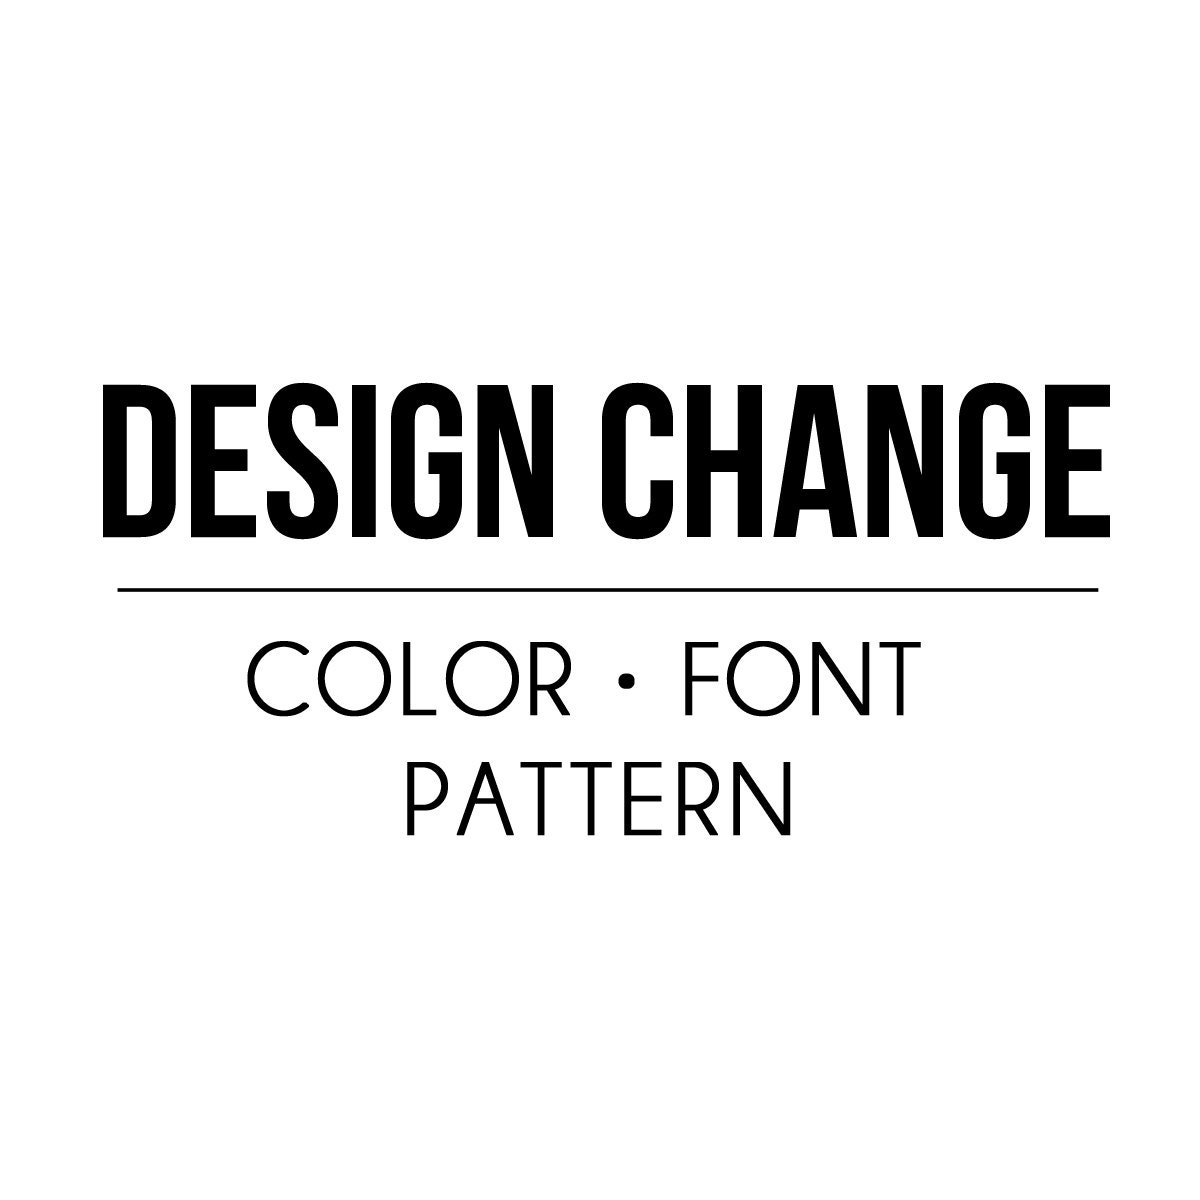 DESIGN CHANGE color/pattern/font